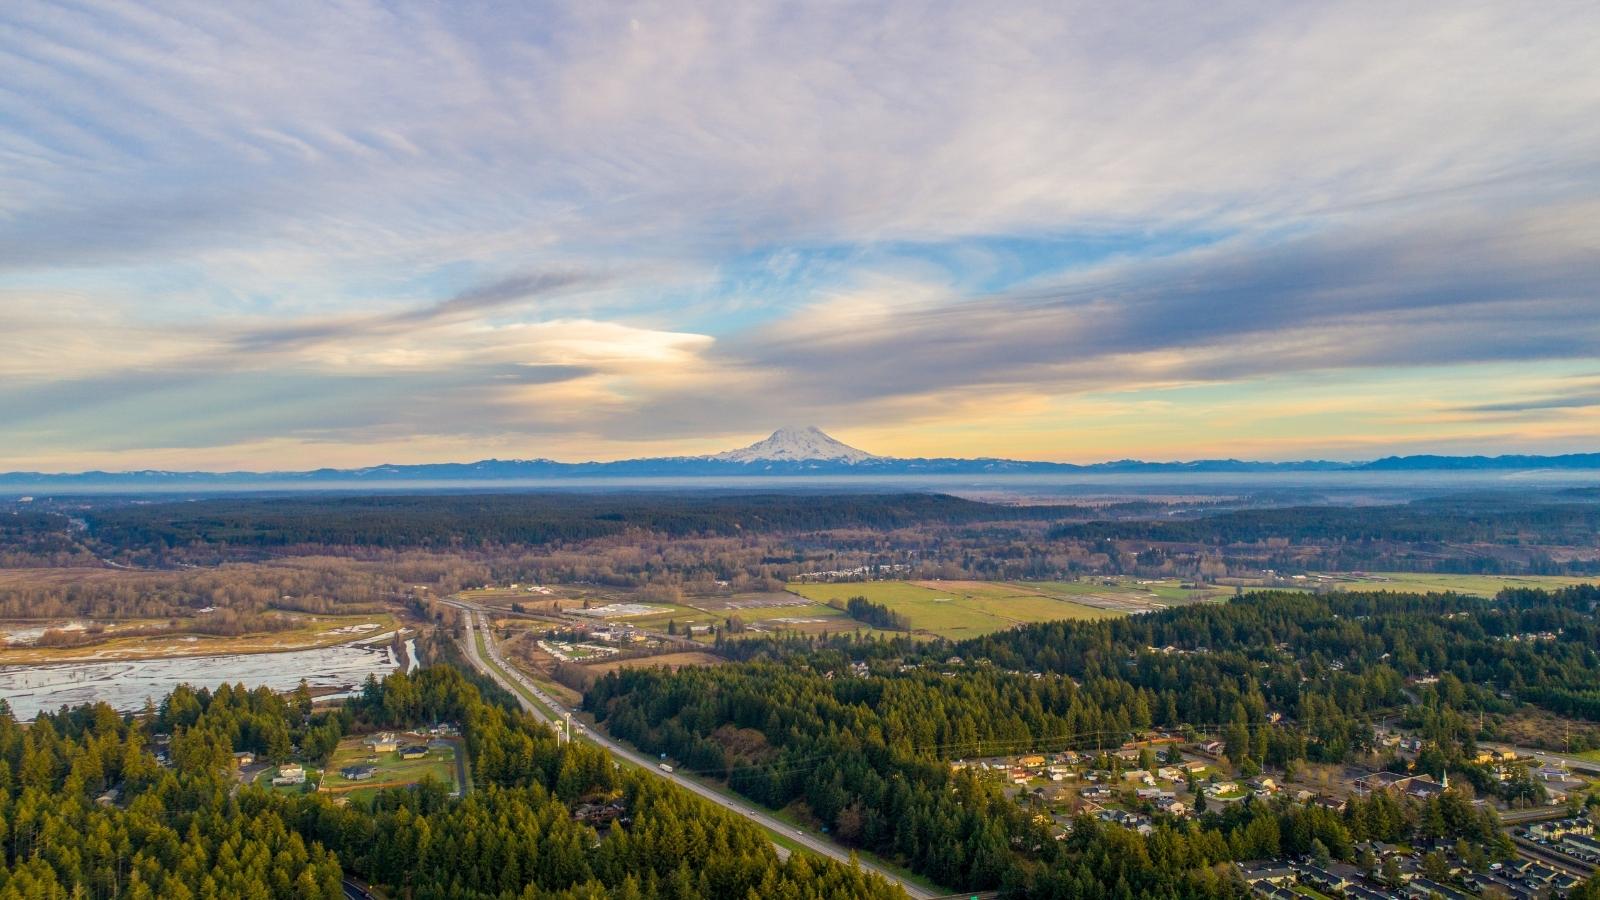 Landscape of Washington state